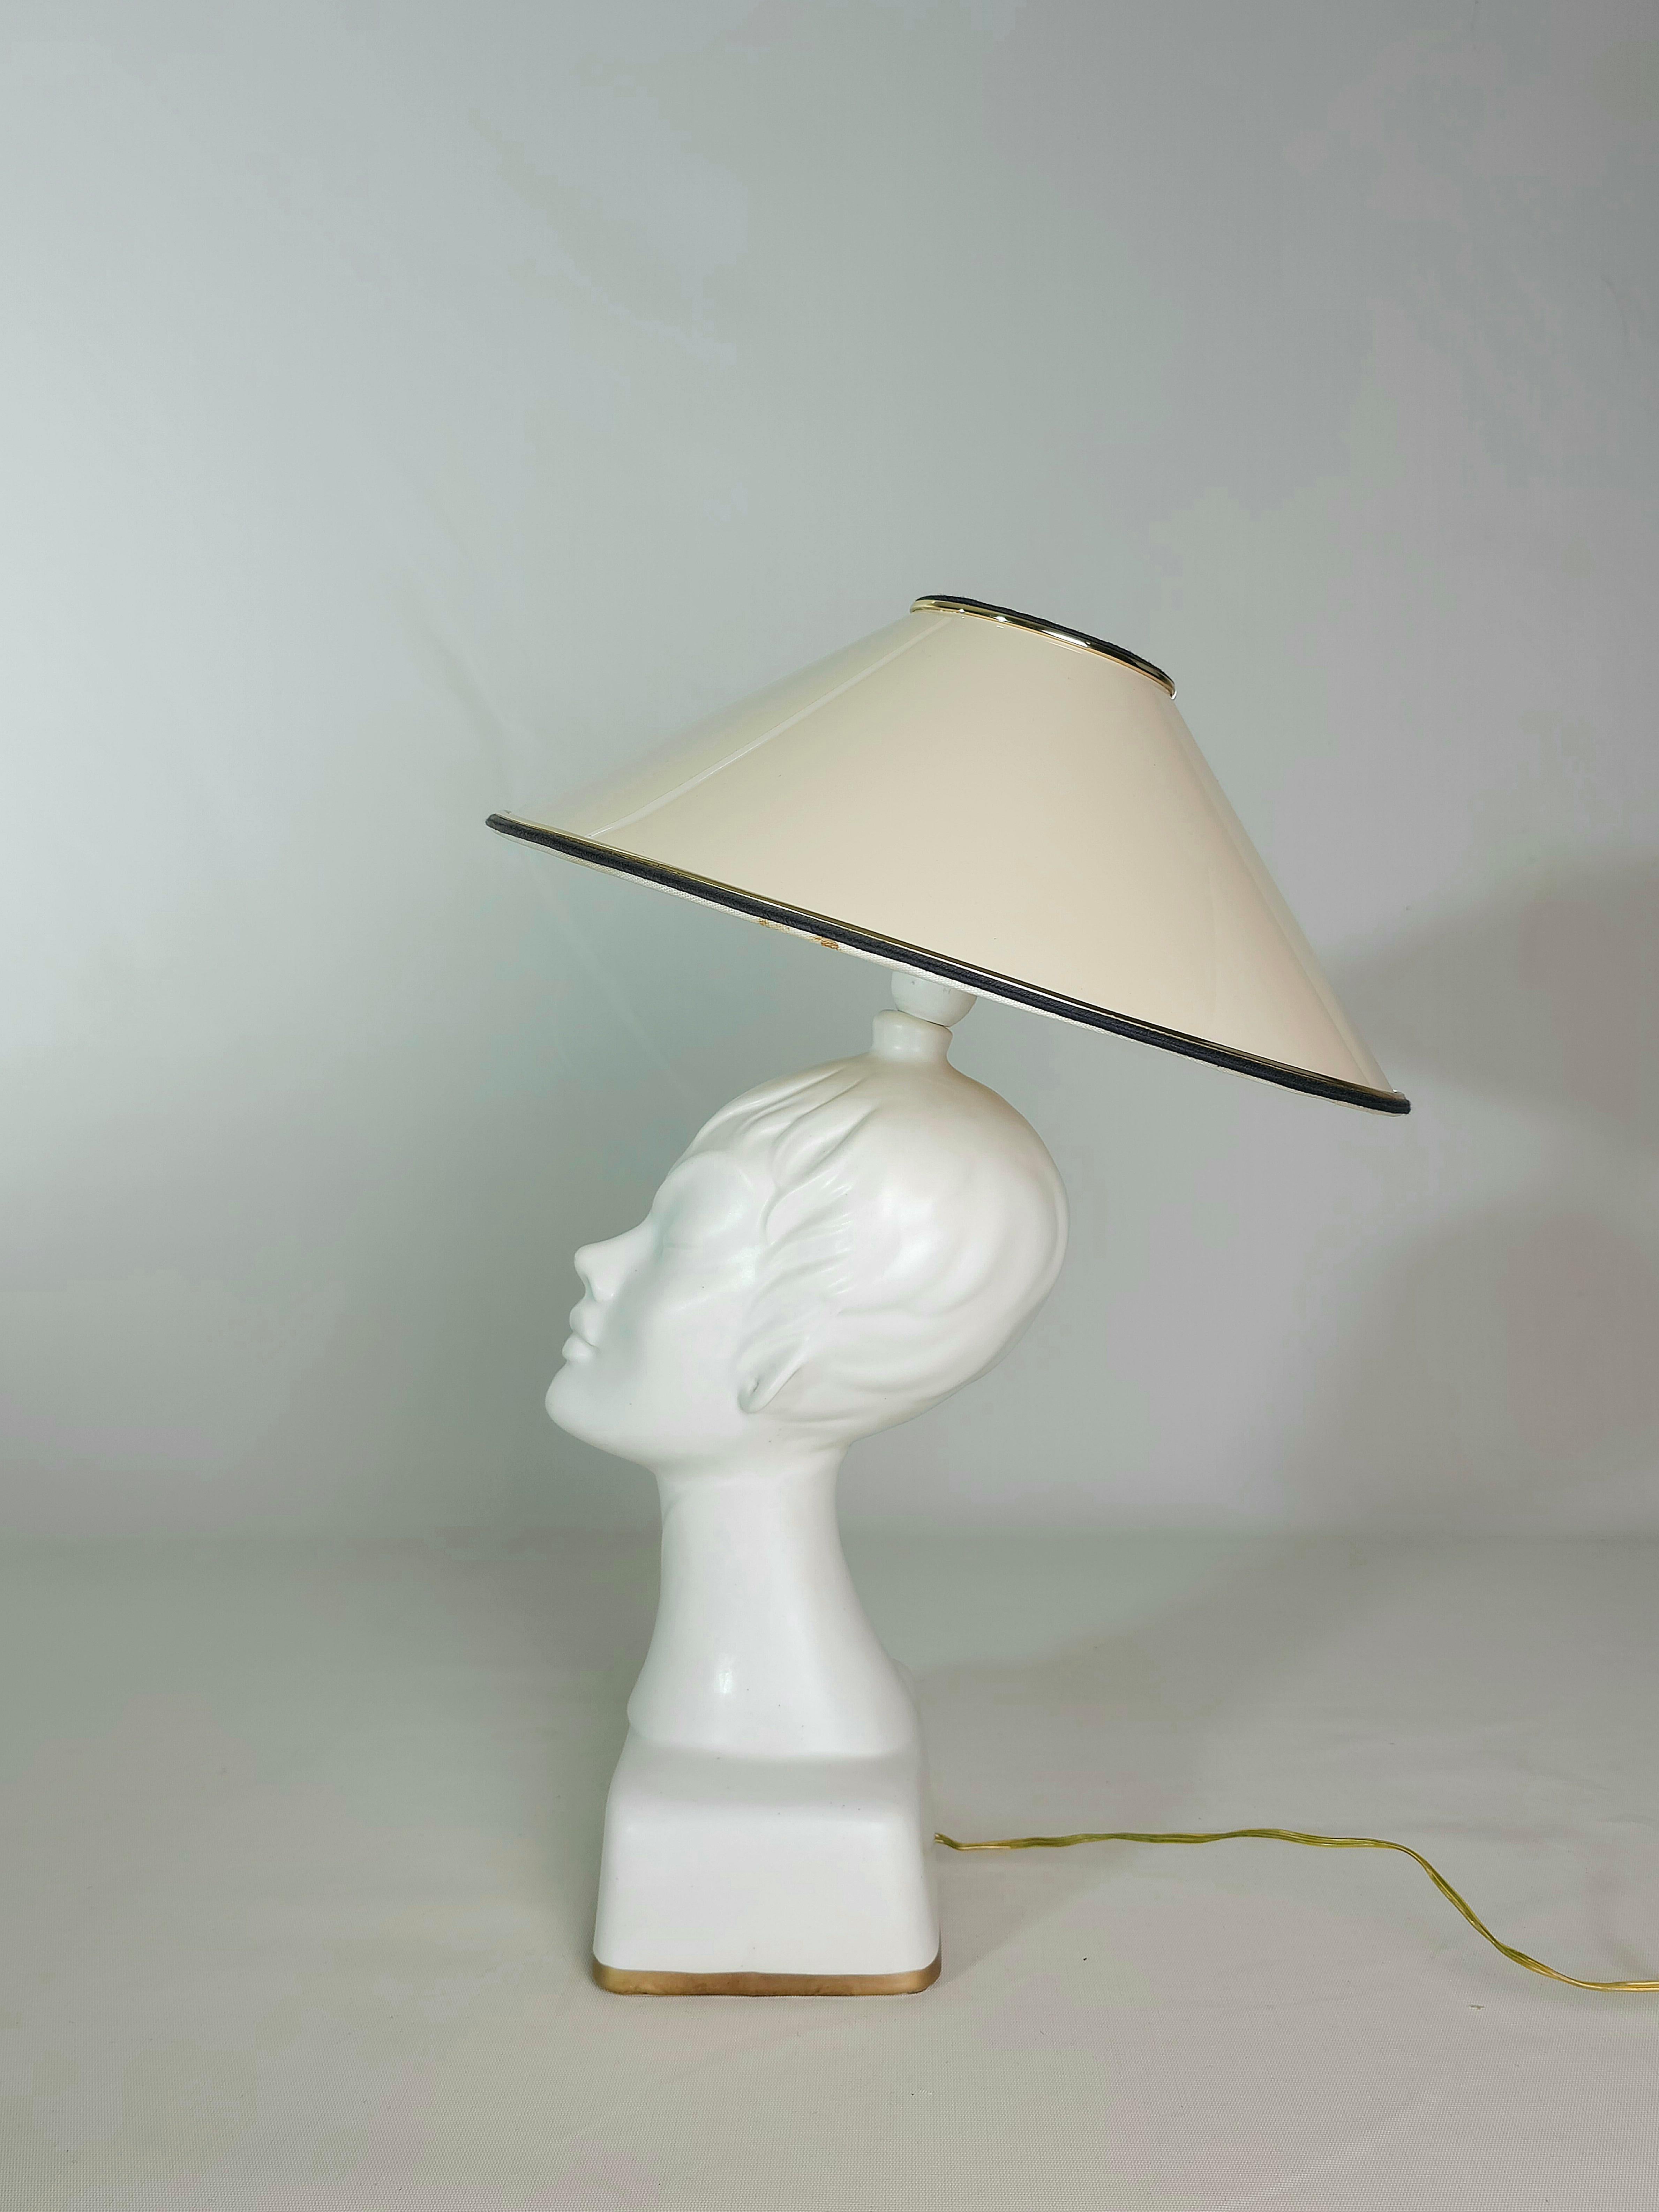 20th Century Table Lamp Ceramic Plastic Material Sicas Midcentury Modern Italian Design 1960s For Sale